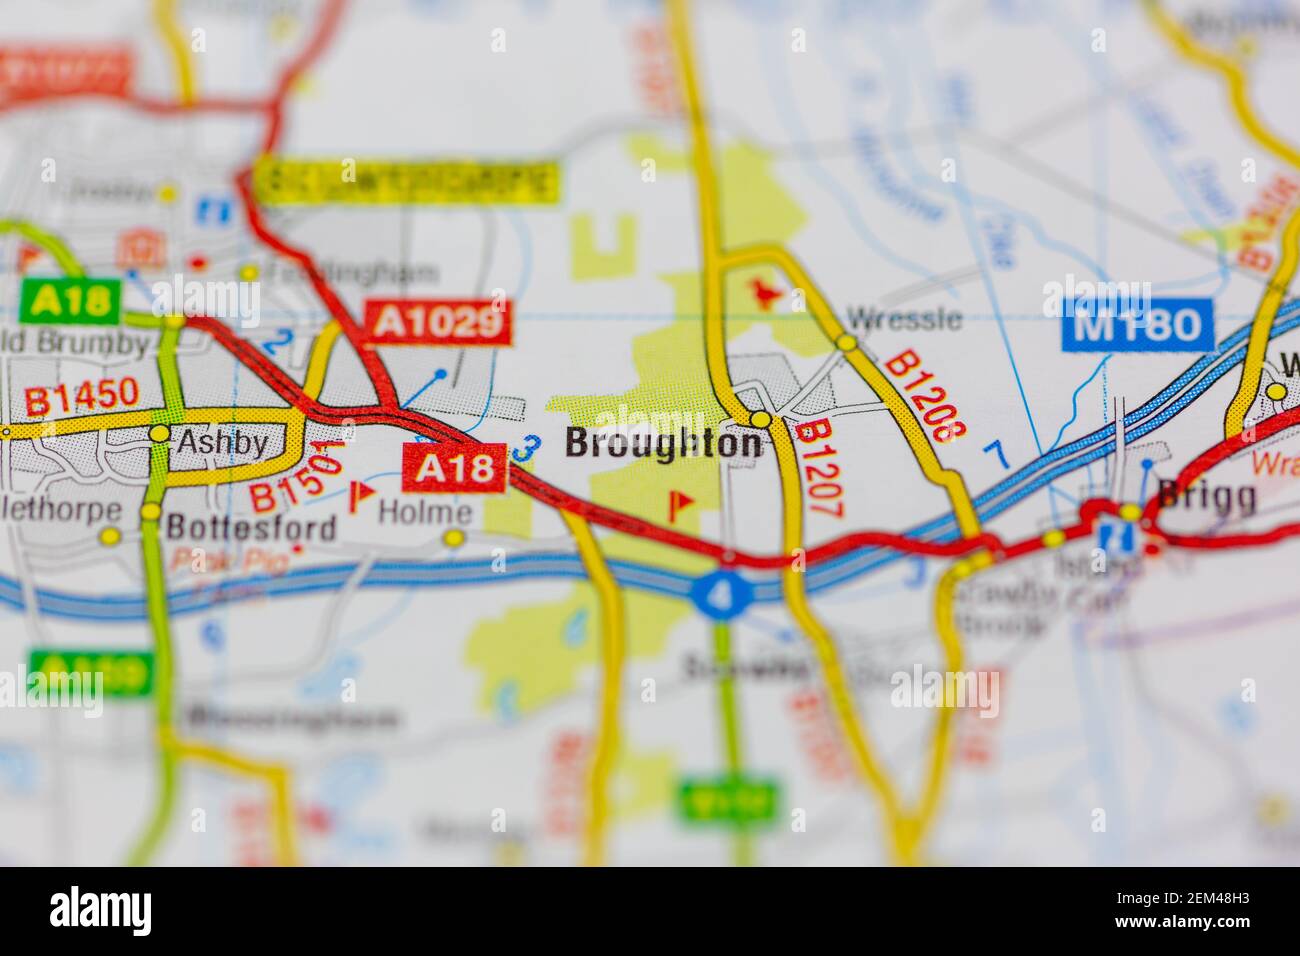 Broughton mostrato su una mappa stradale o geografica Foto Stock